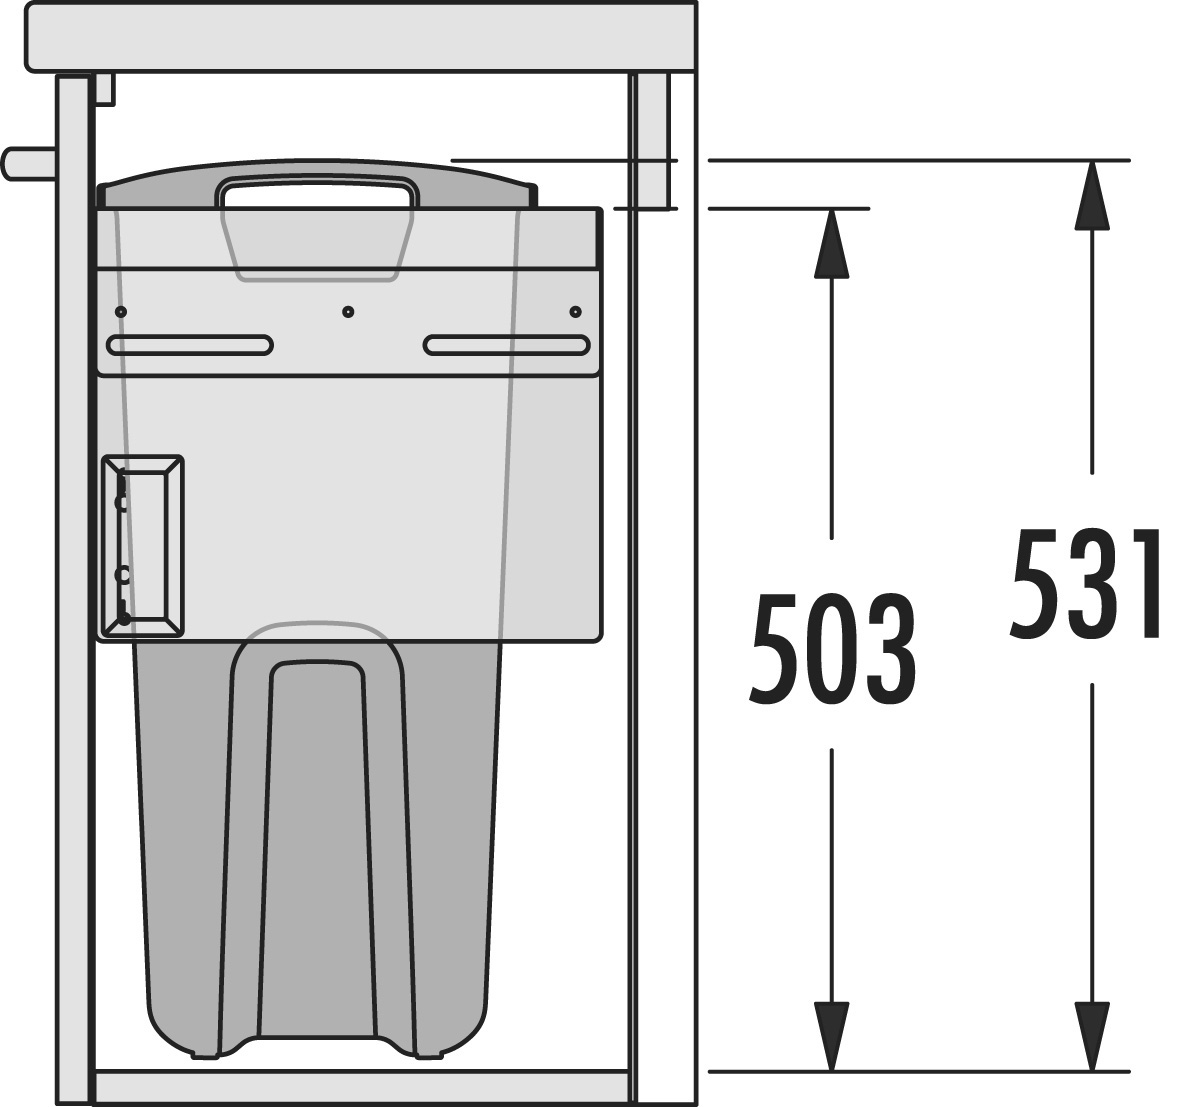 Система хранения белья Laundry-Carrier 45 Bathroom, 1х33л серебристая рама, 412-418x298x531мм